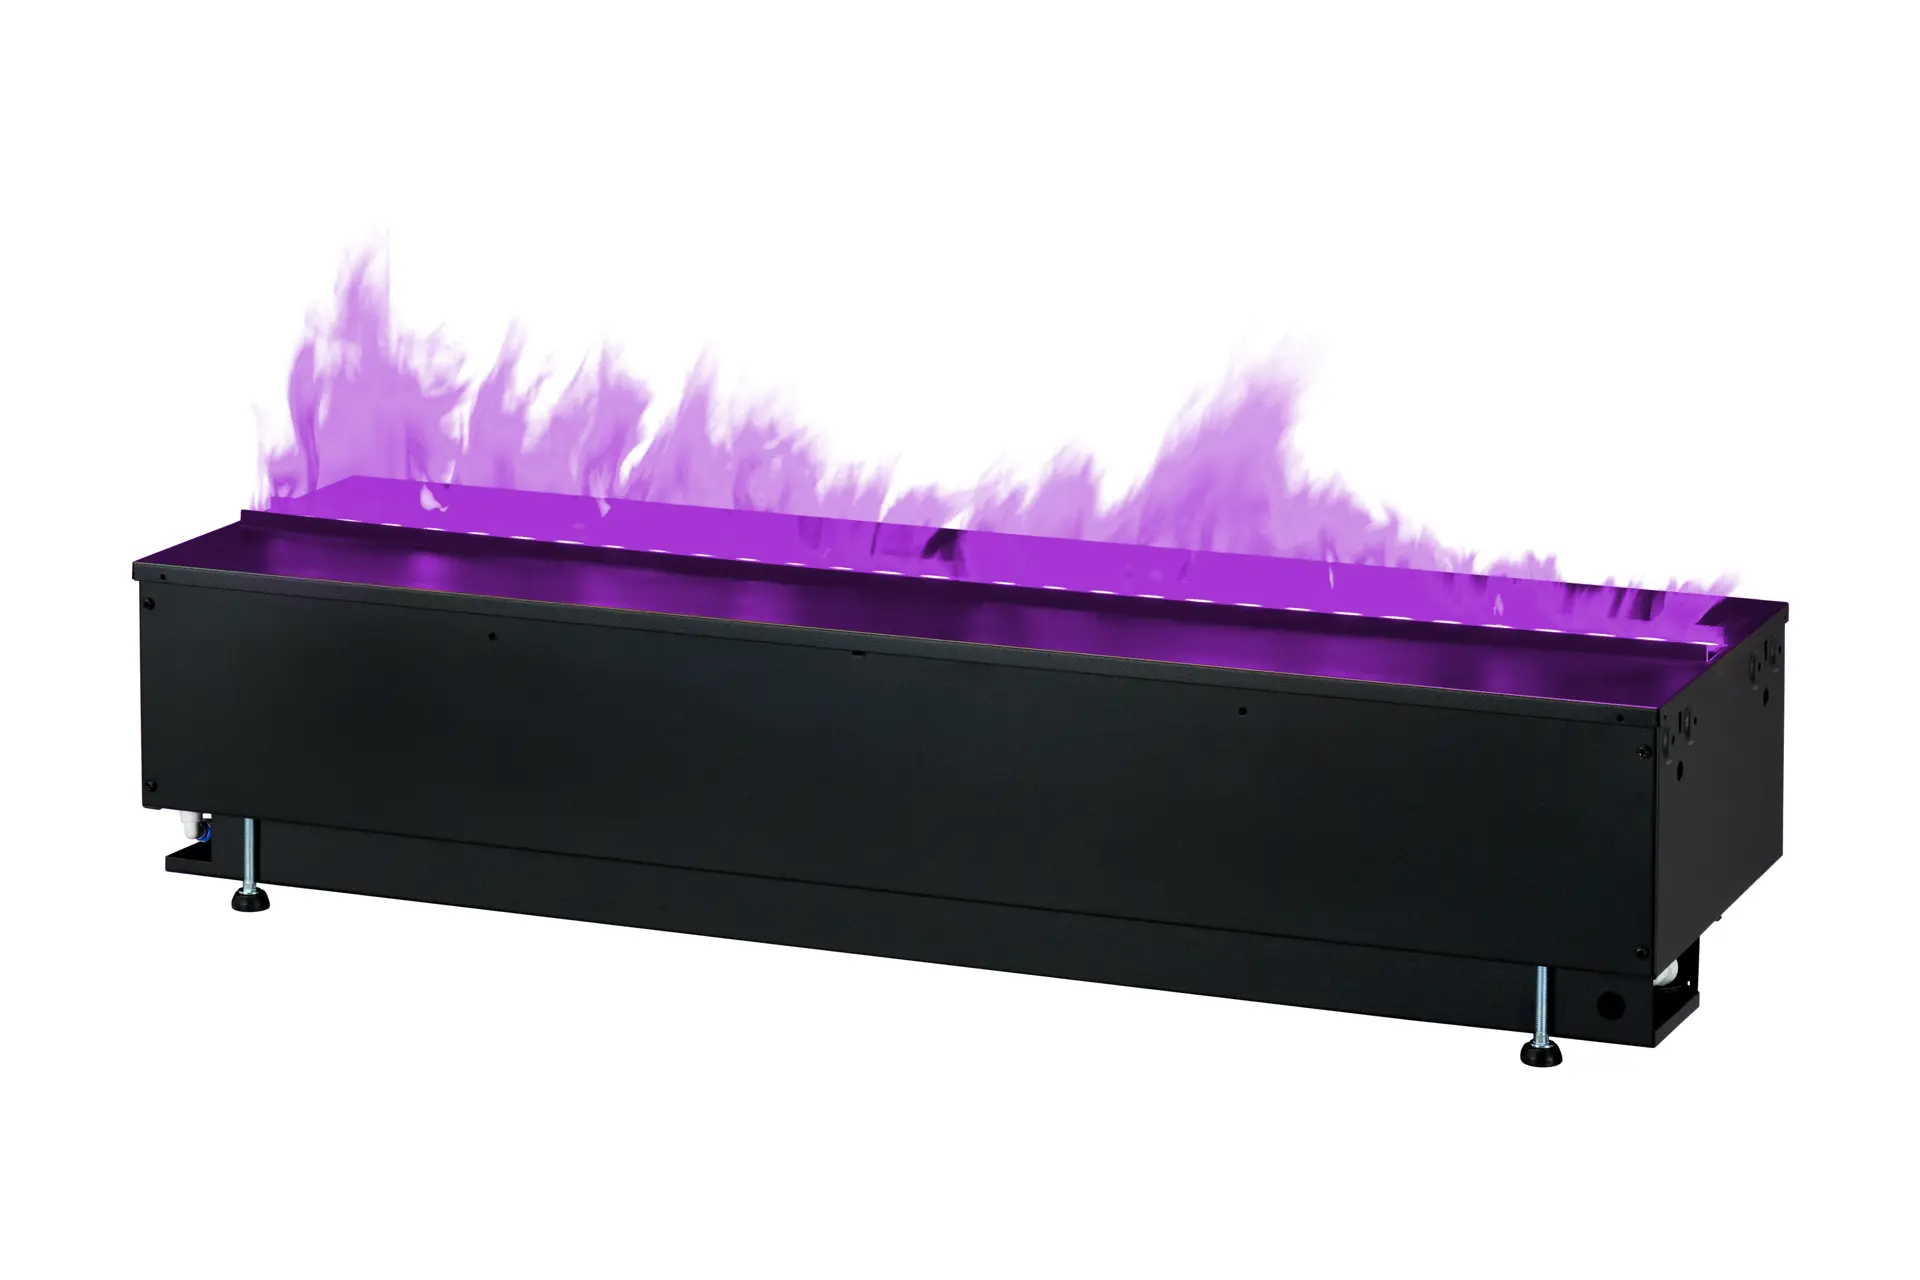 Dimplex_Cassette 1000 projects_400001275_Left Purple Flame.jpg